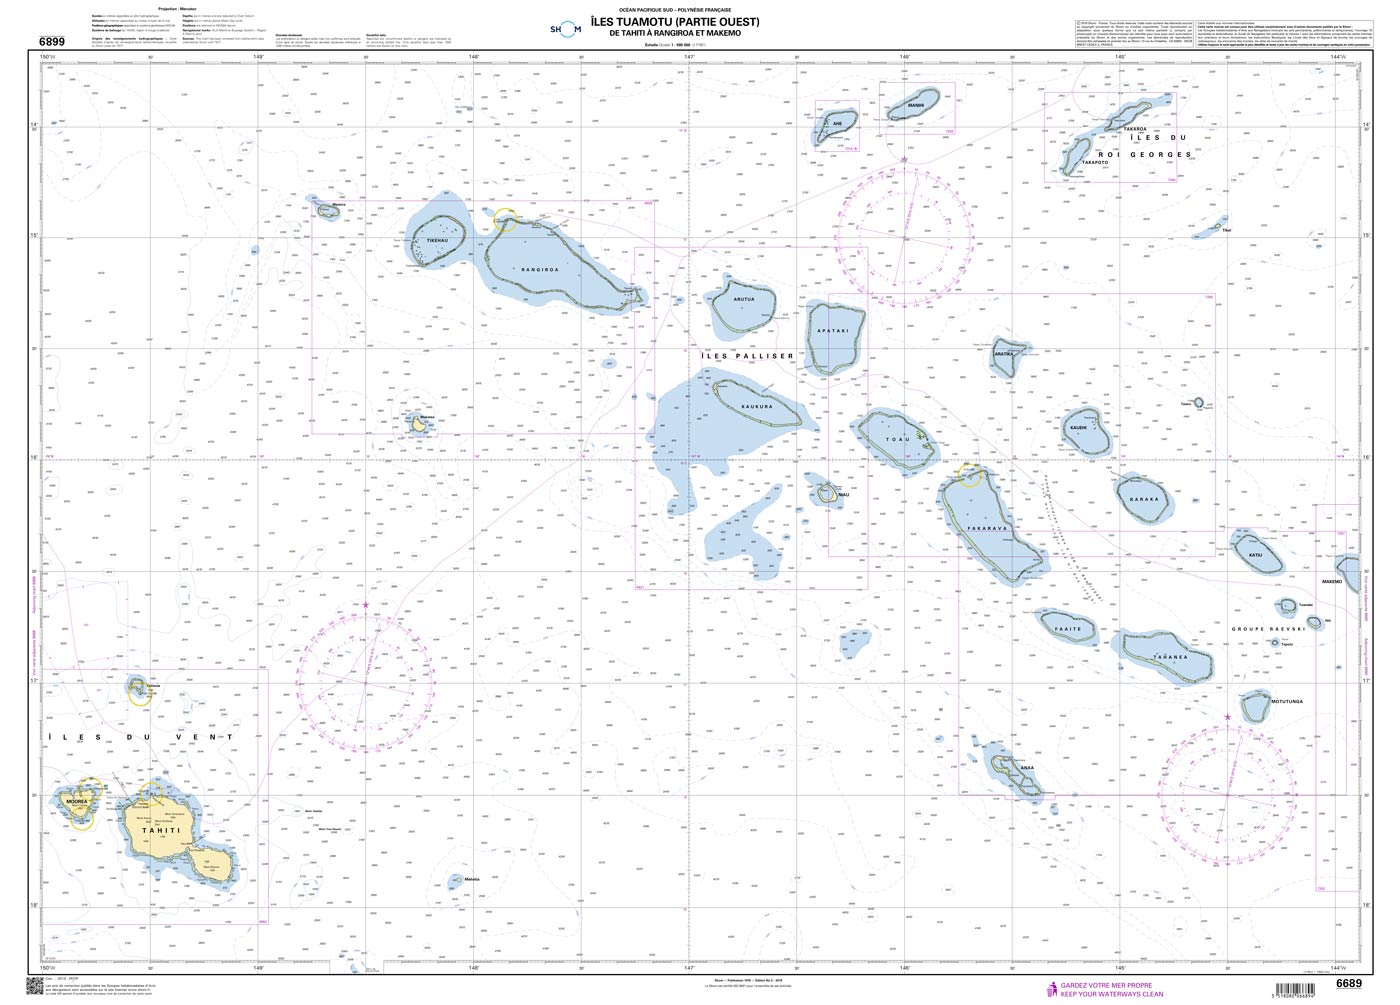 Shom 6689 - Îles Tuamotu (Partie Ouest) - De Tahiti à Rangiroa et Makemo